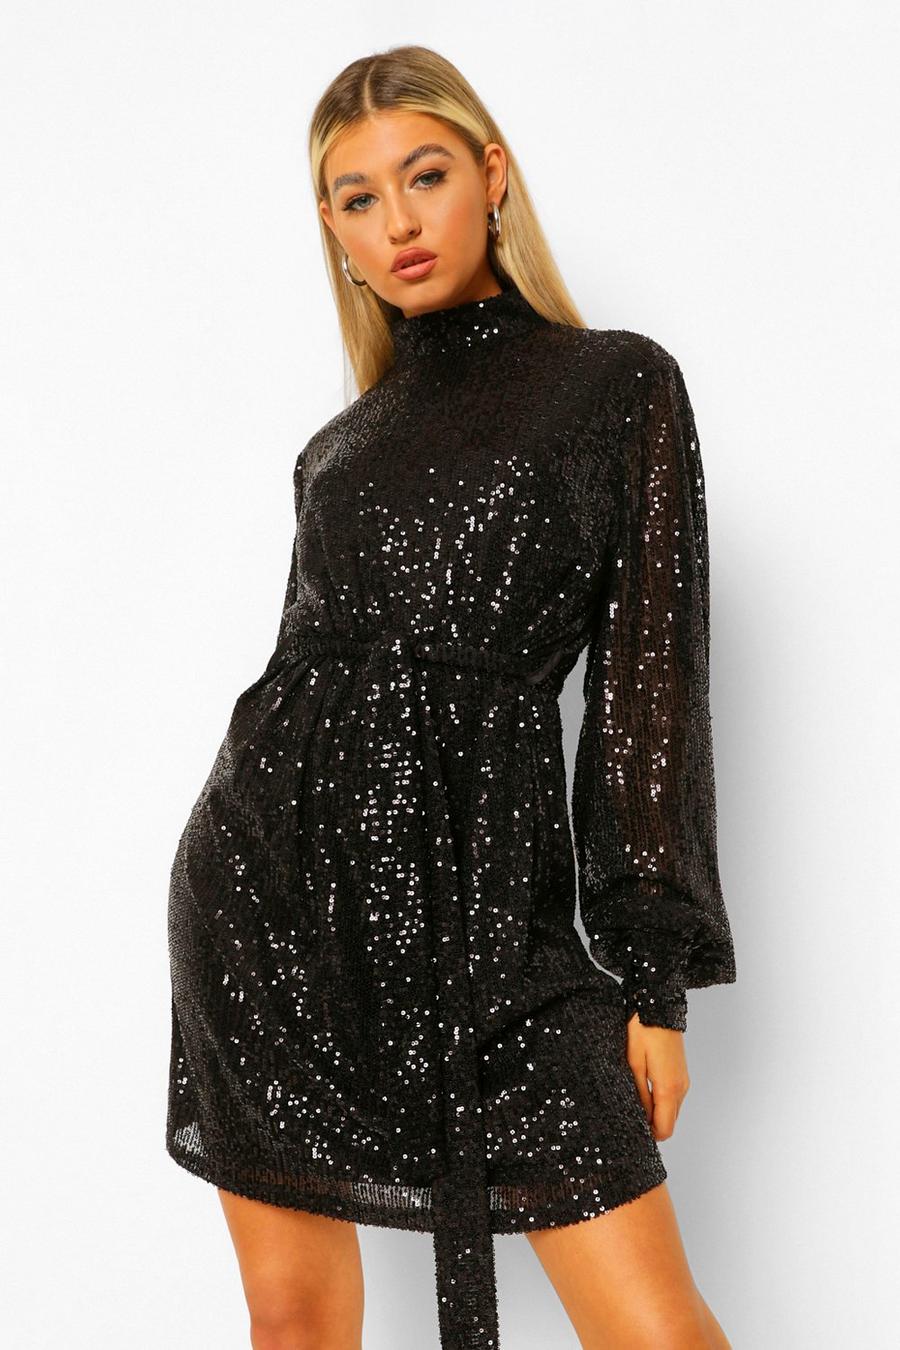 שחור שמלת מיני עם חגורה ושרוולי בלון עם פייטים לנשים גבוהות image number 1